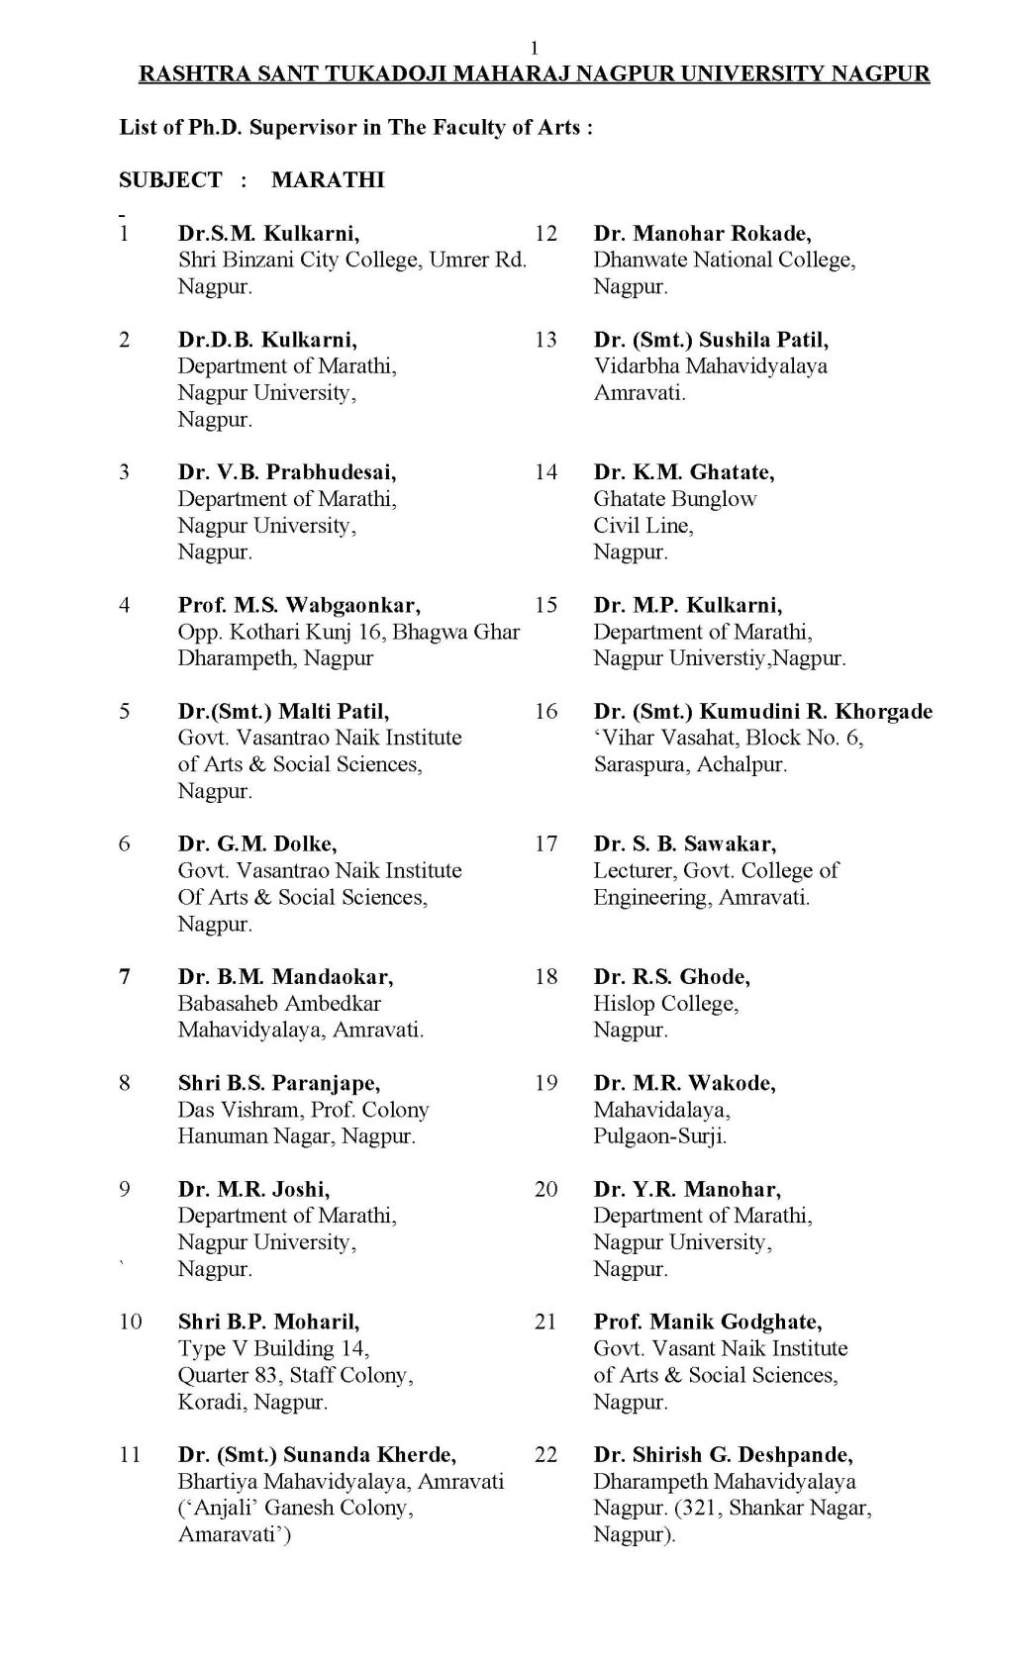 rtm nagpur university phd guide list